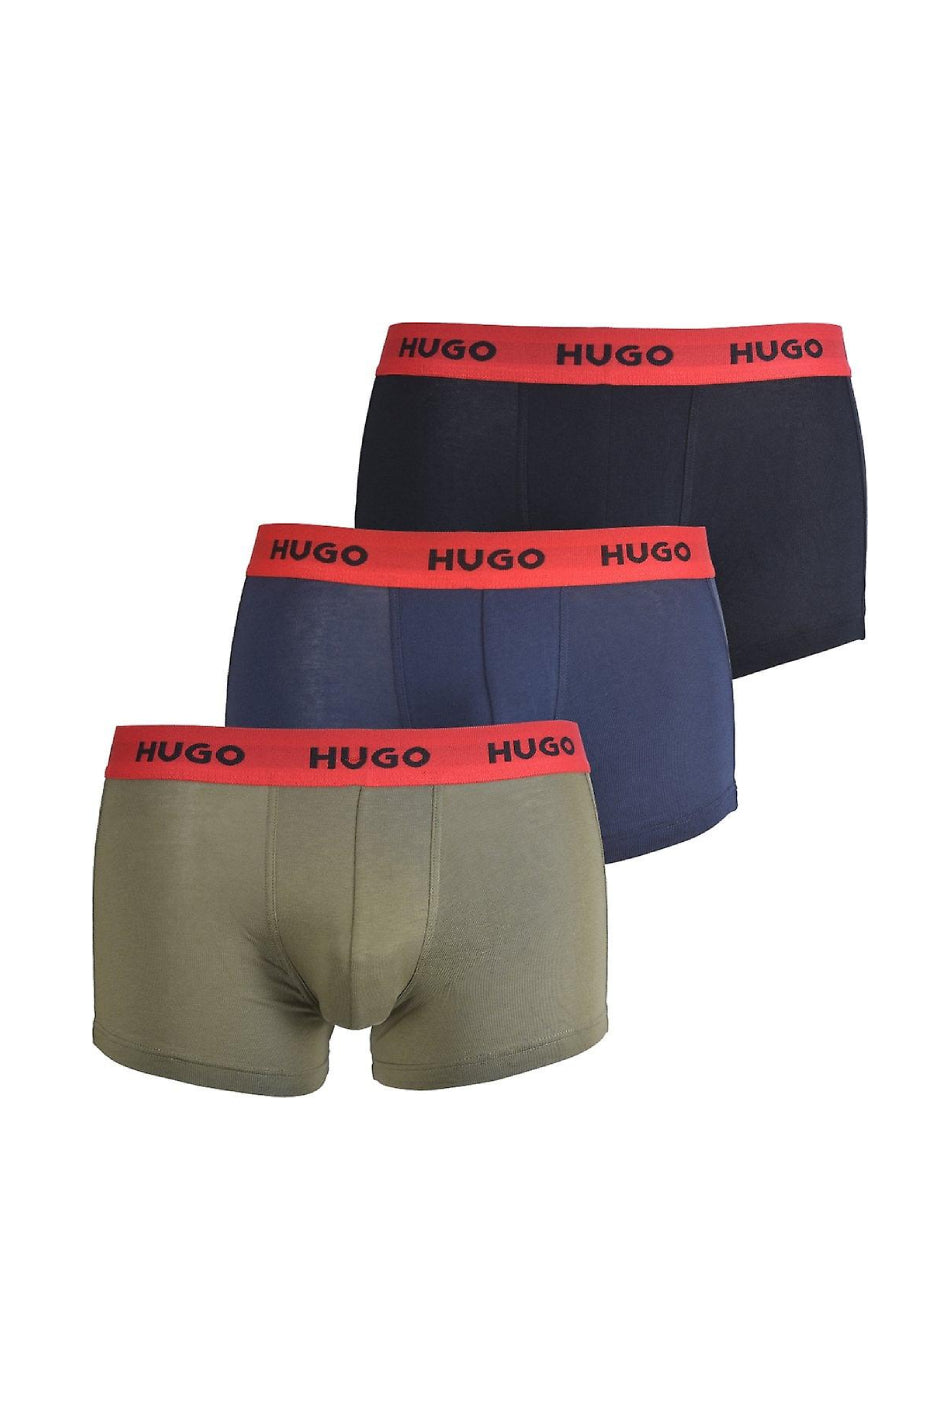 HUGO 3 Pack Men's Trunk